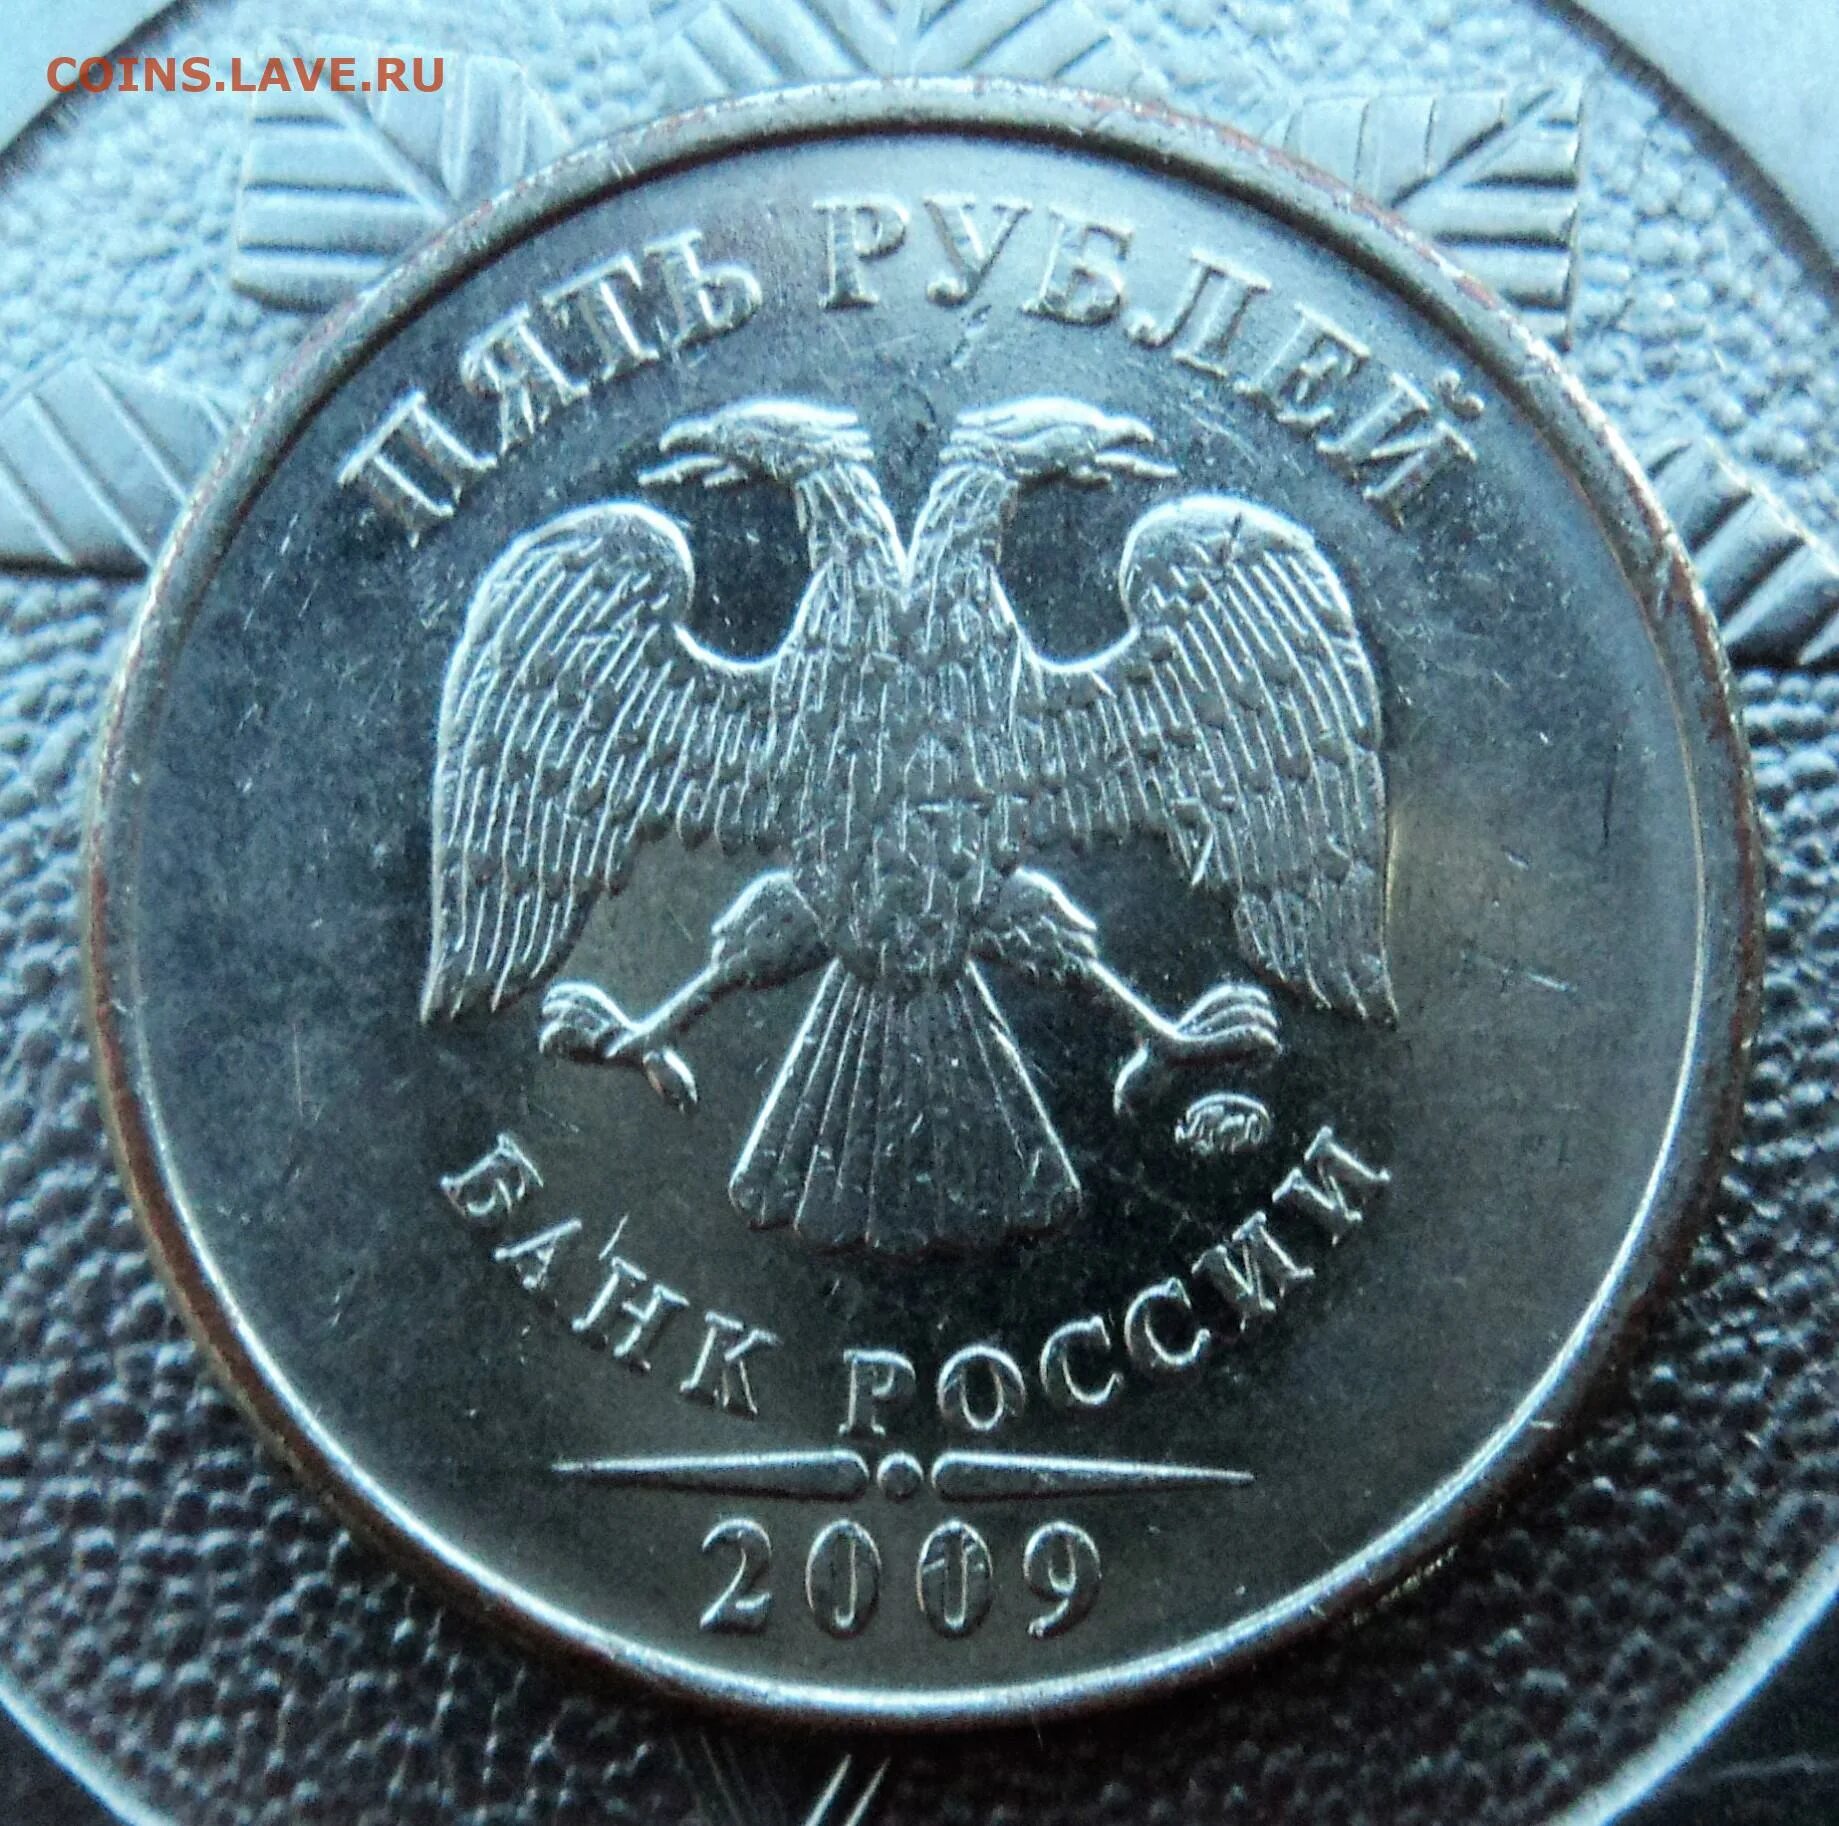 5 рублей 2024 года. Монета с орлом и львом. 5 Рублей 2009 раскол. Редкие монеты России 2 рубля 2009 г.